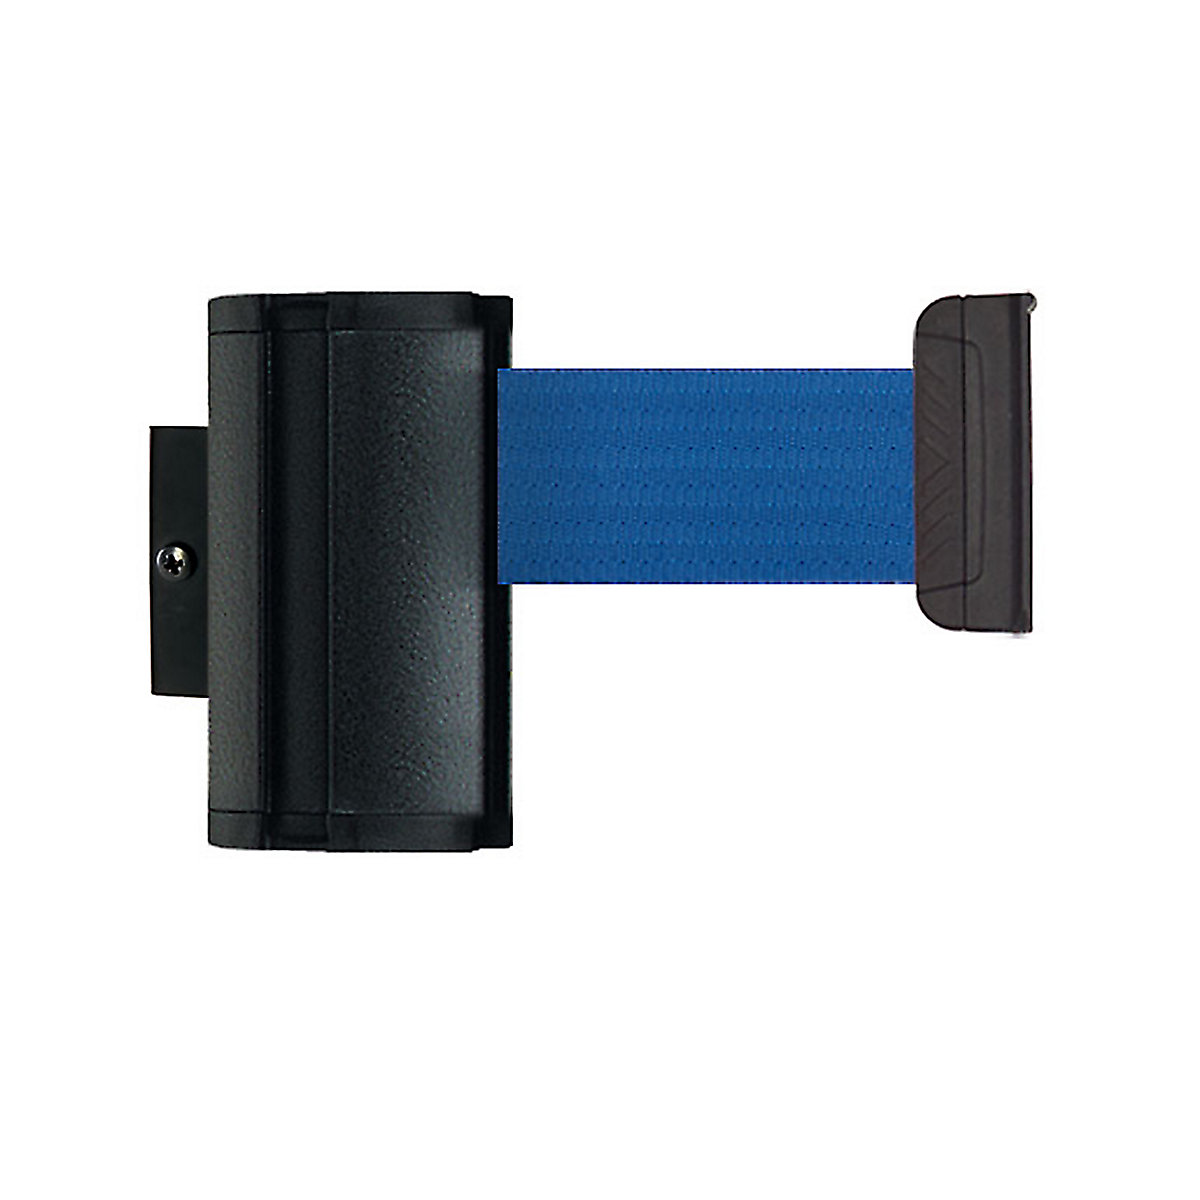 Cassetta per nastro Wall Mount, estrazione nastro max 2300 mm, nastro blu-6